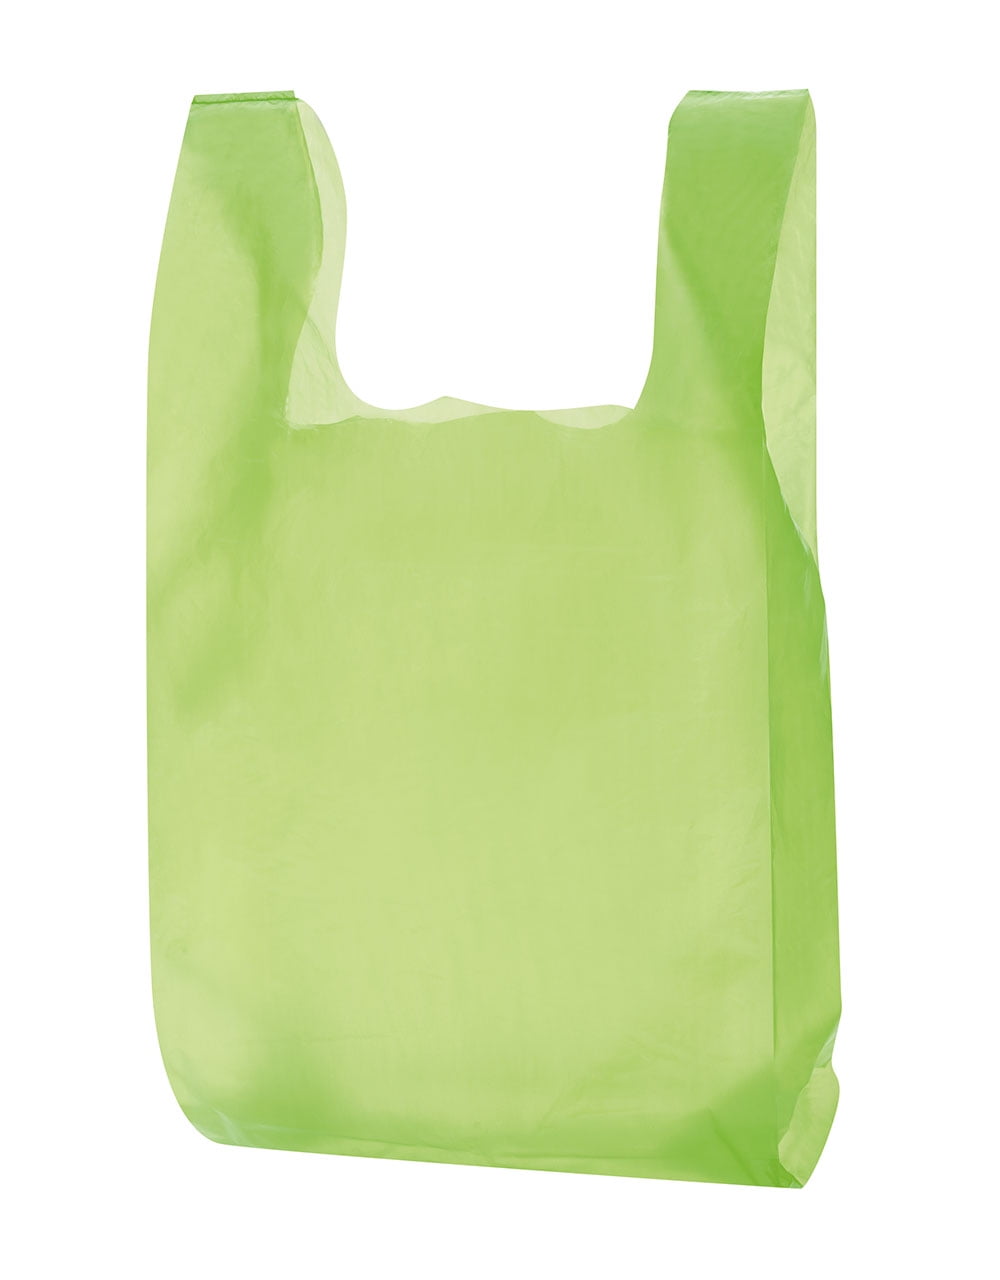 Lime Green Plastic T-Shirt Bags - Case of 1,000 - Walmart.com - Walmart.com